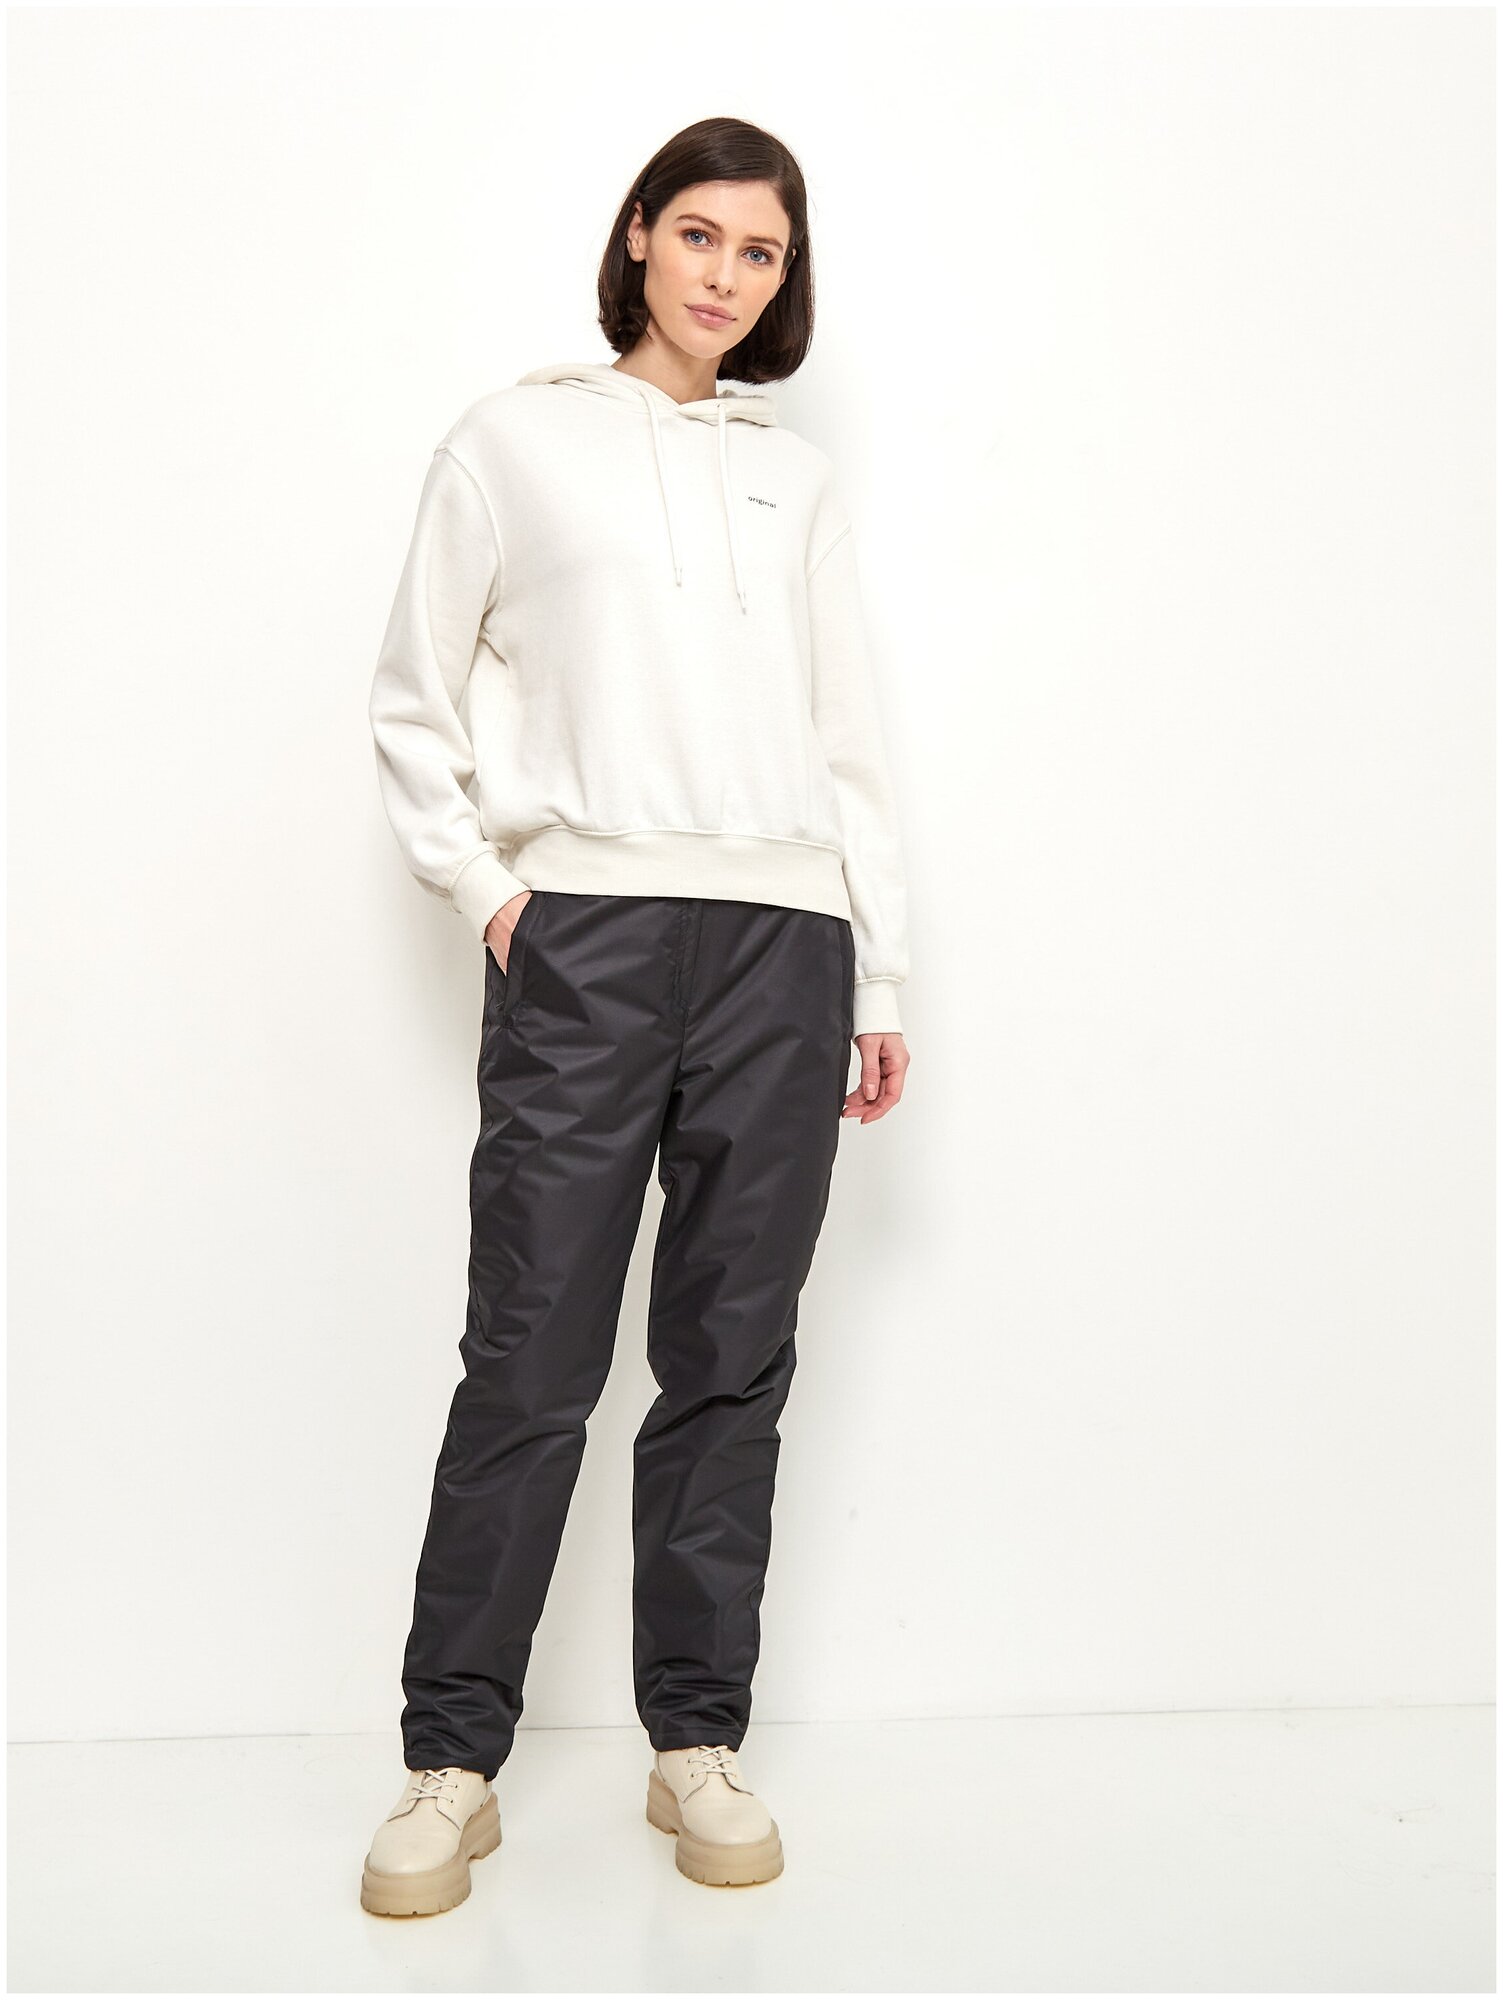 Зимние женские штаны брюки утепленные для прогулок на синтепоне KATRAN Winter мембранная ткань, Черный, Размер: 56-58